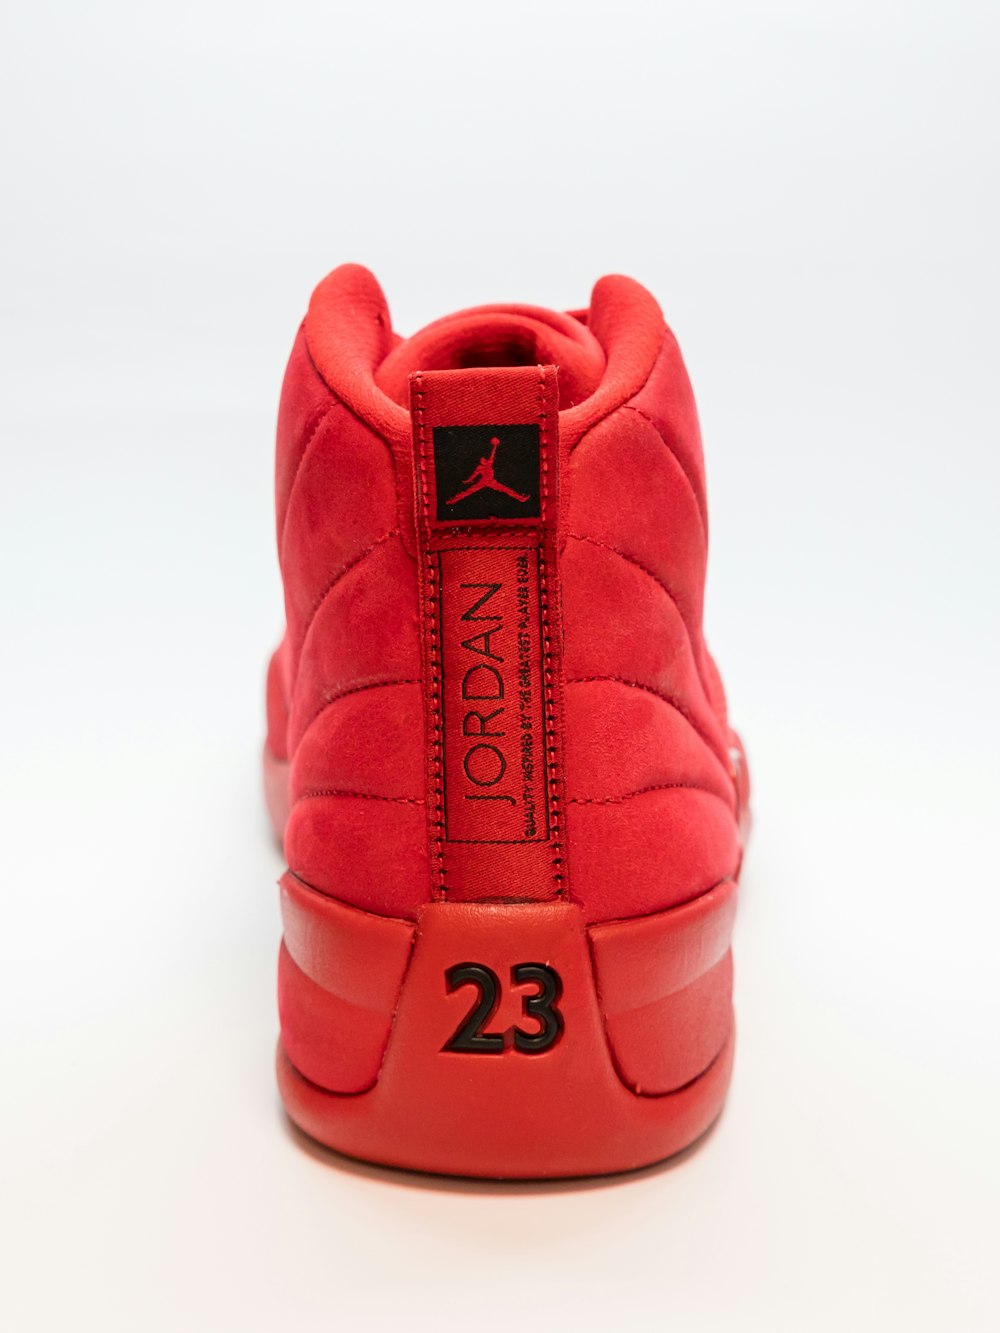 Foto Zapatillas de baloncesto air jordan rojas sin emparejar – Imagen Rojo  gratis en Unsplash